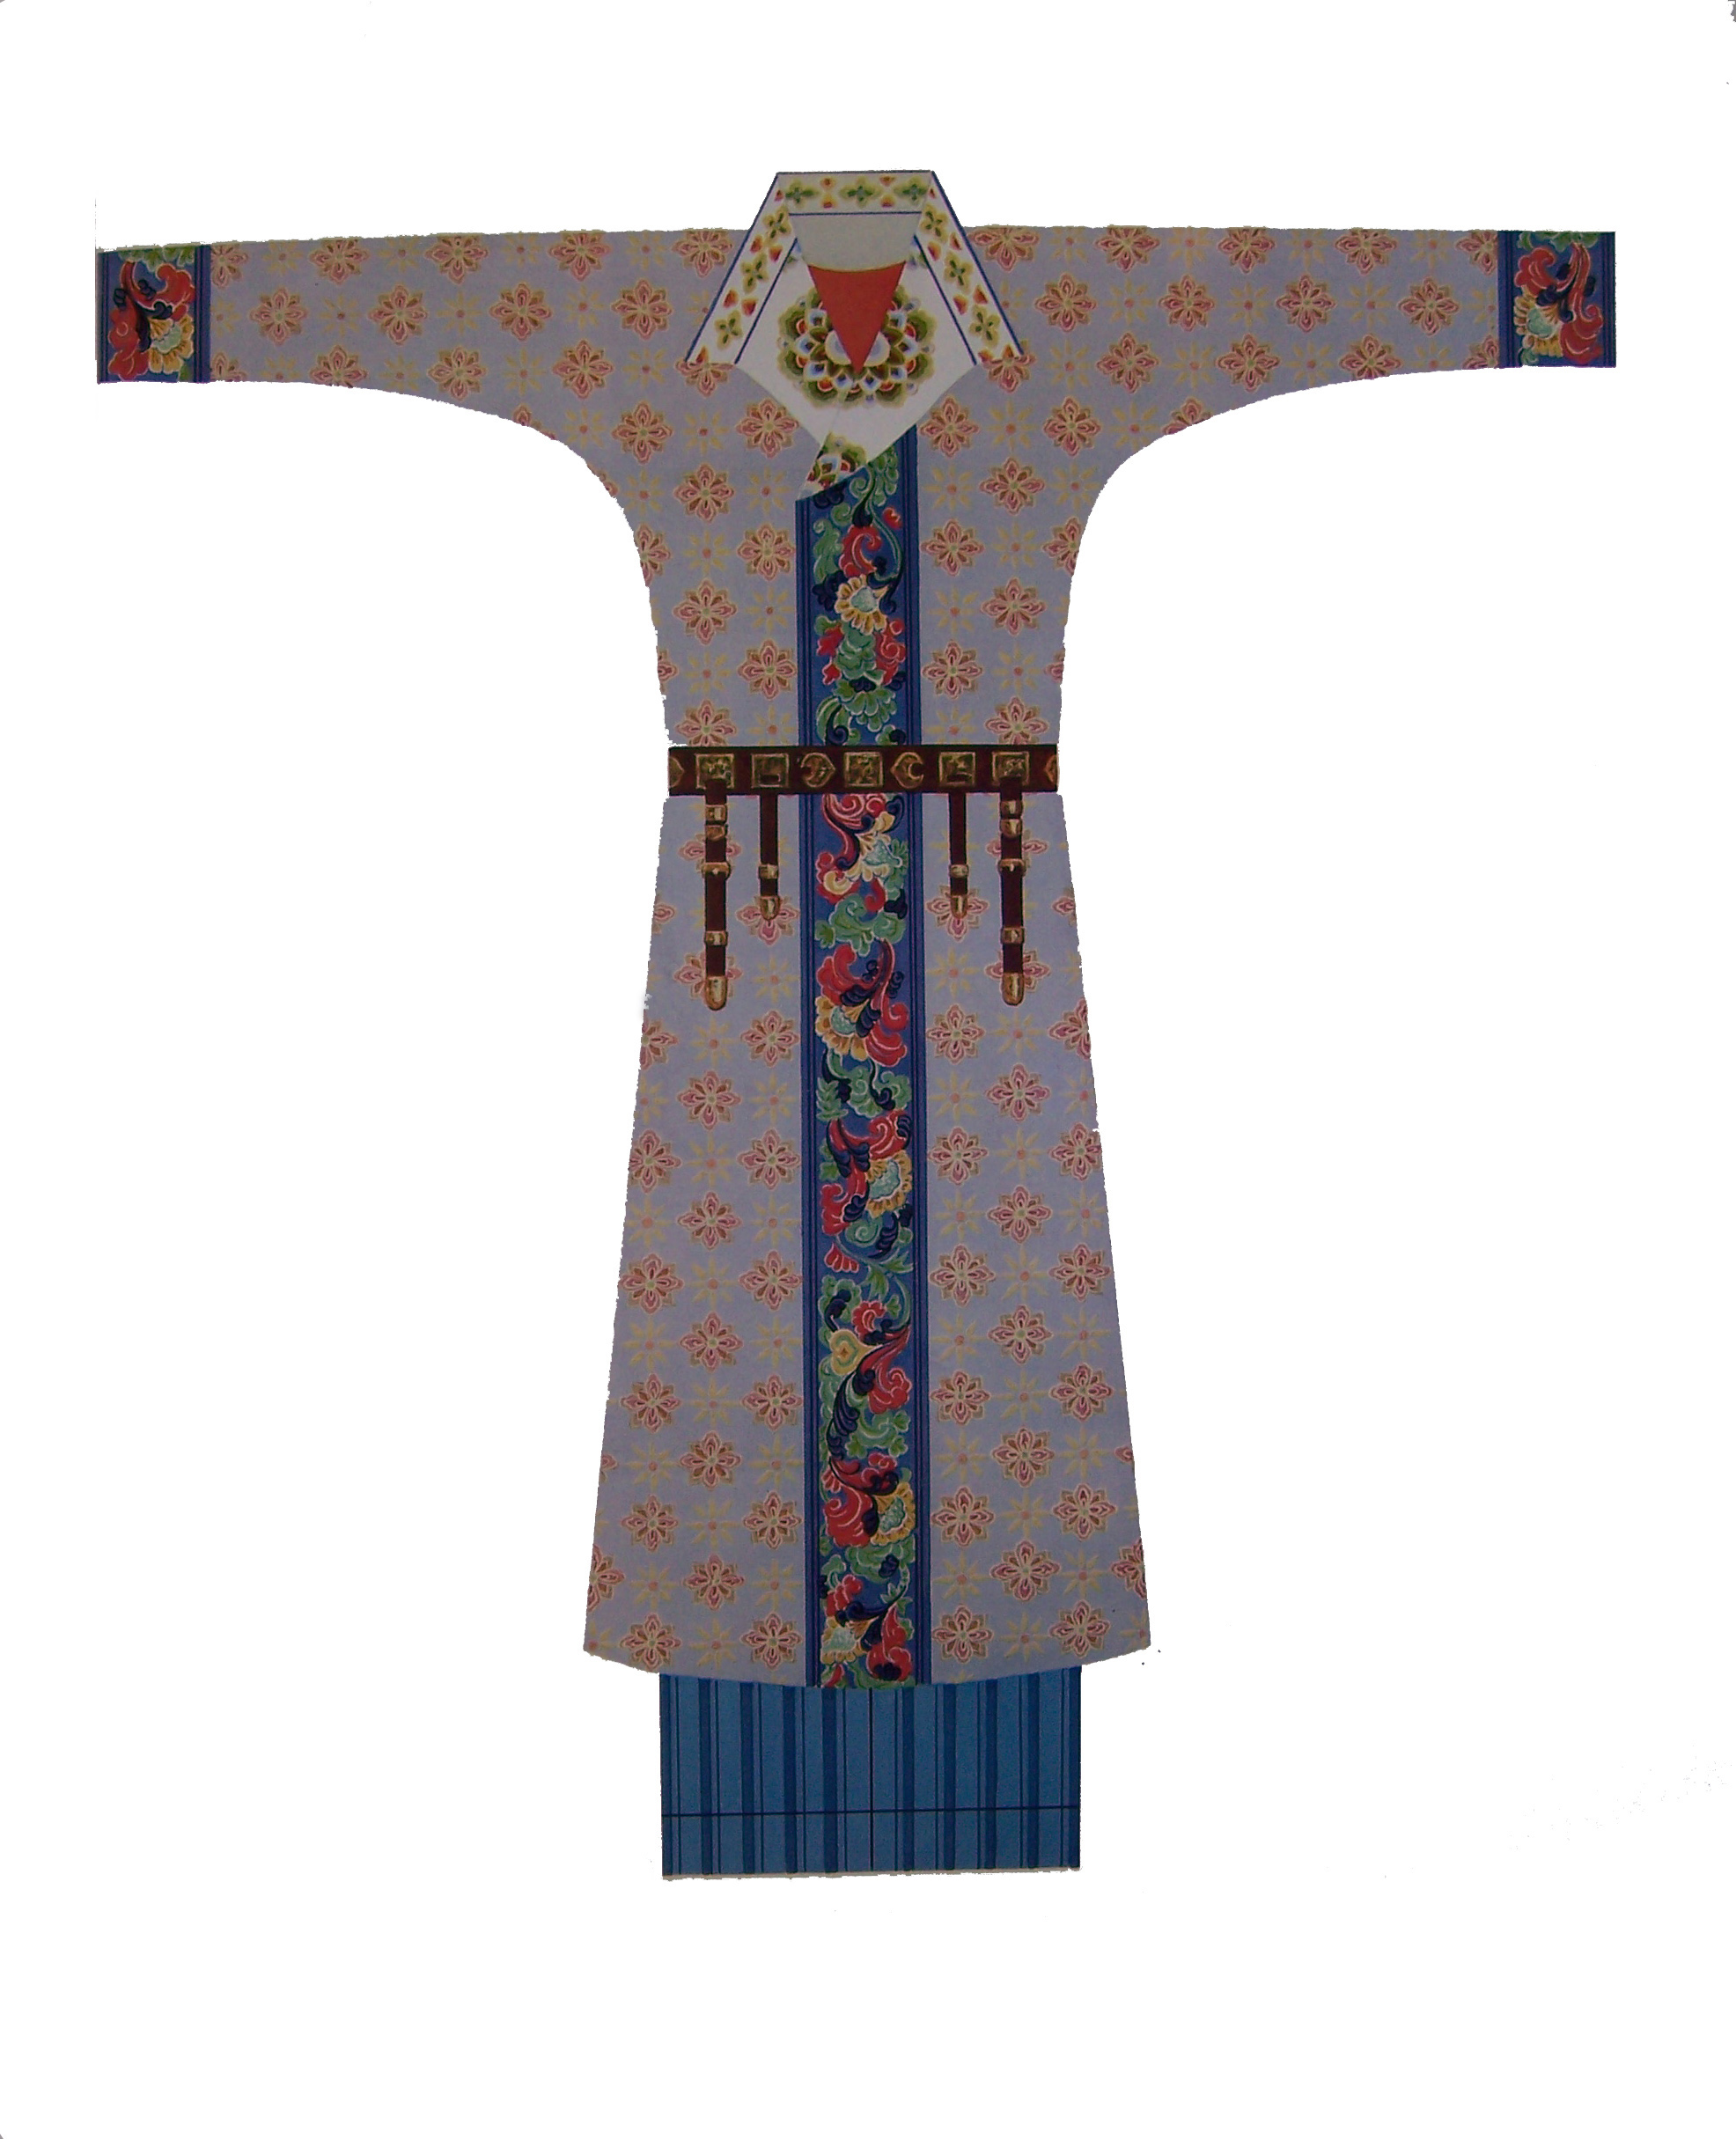 胡服不仅对唐代社会风尚有影响,还影响到唐代官服,初,盛唐时期流行窄